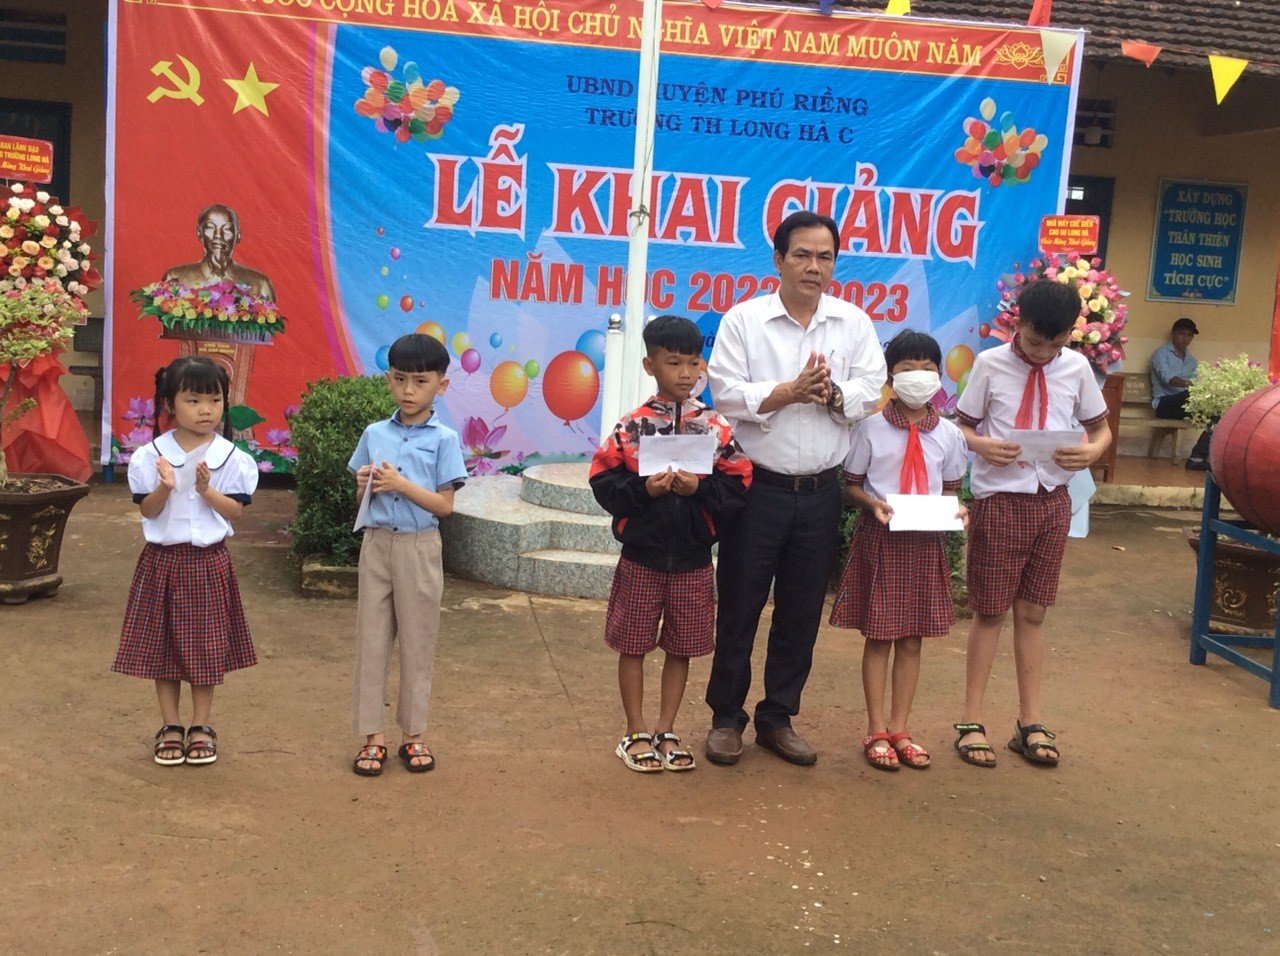 BVĐ quỹ “Vì Người nghèo” xã Long Hà chi hỗ trợ 30 em học sinh